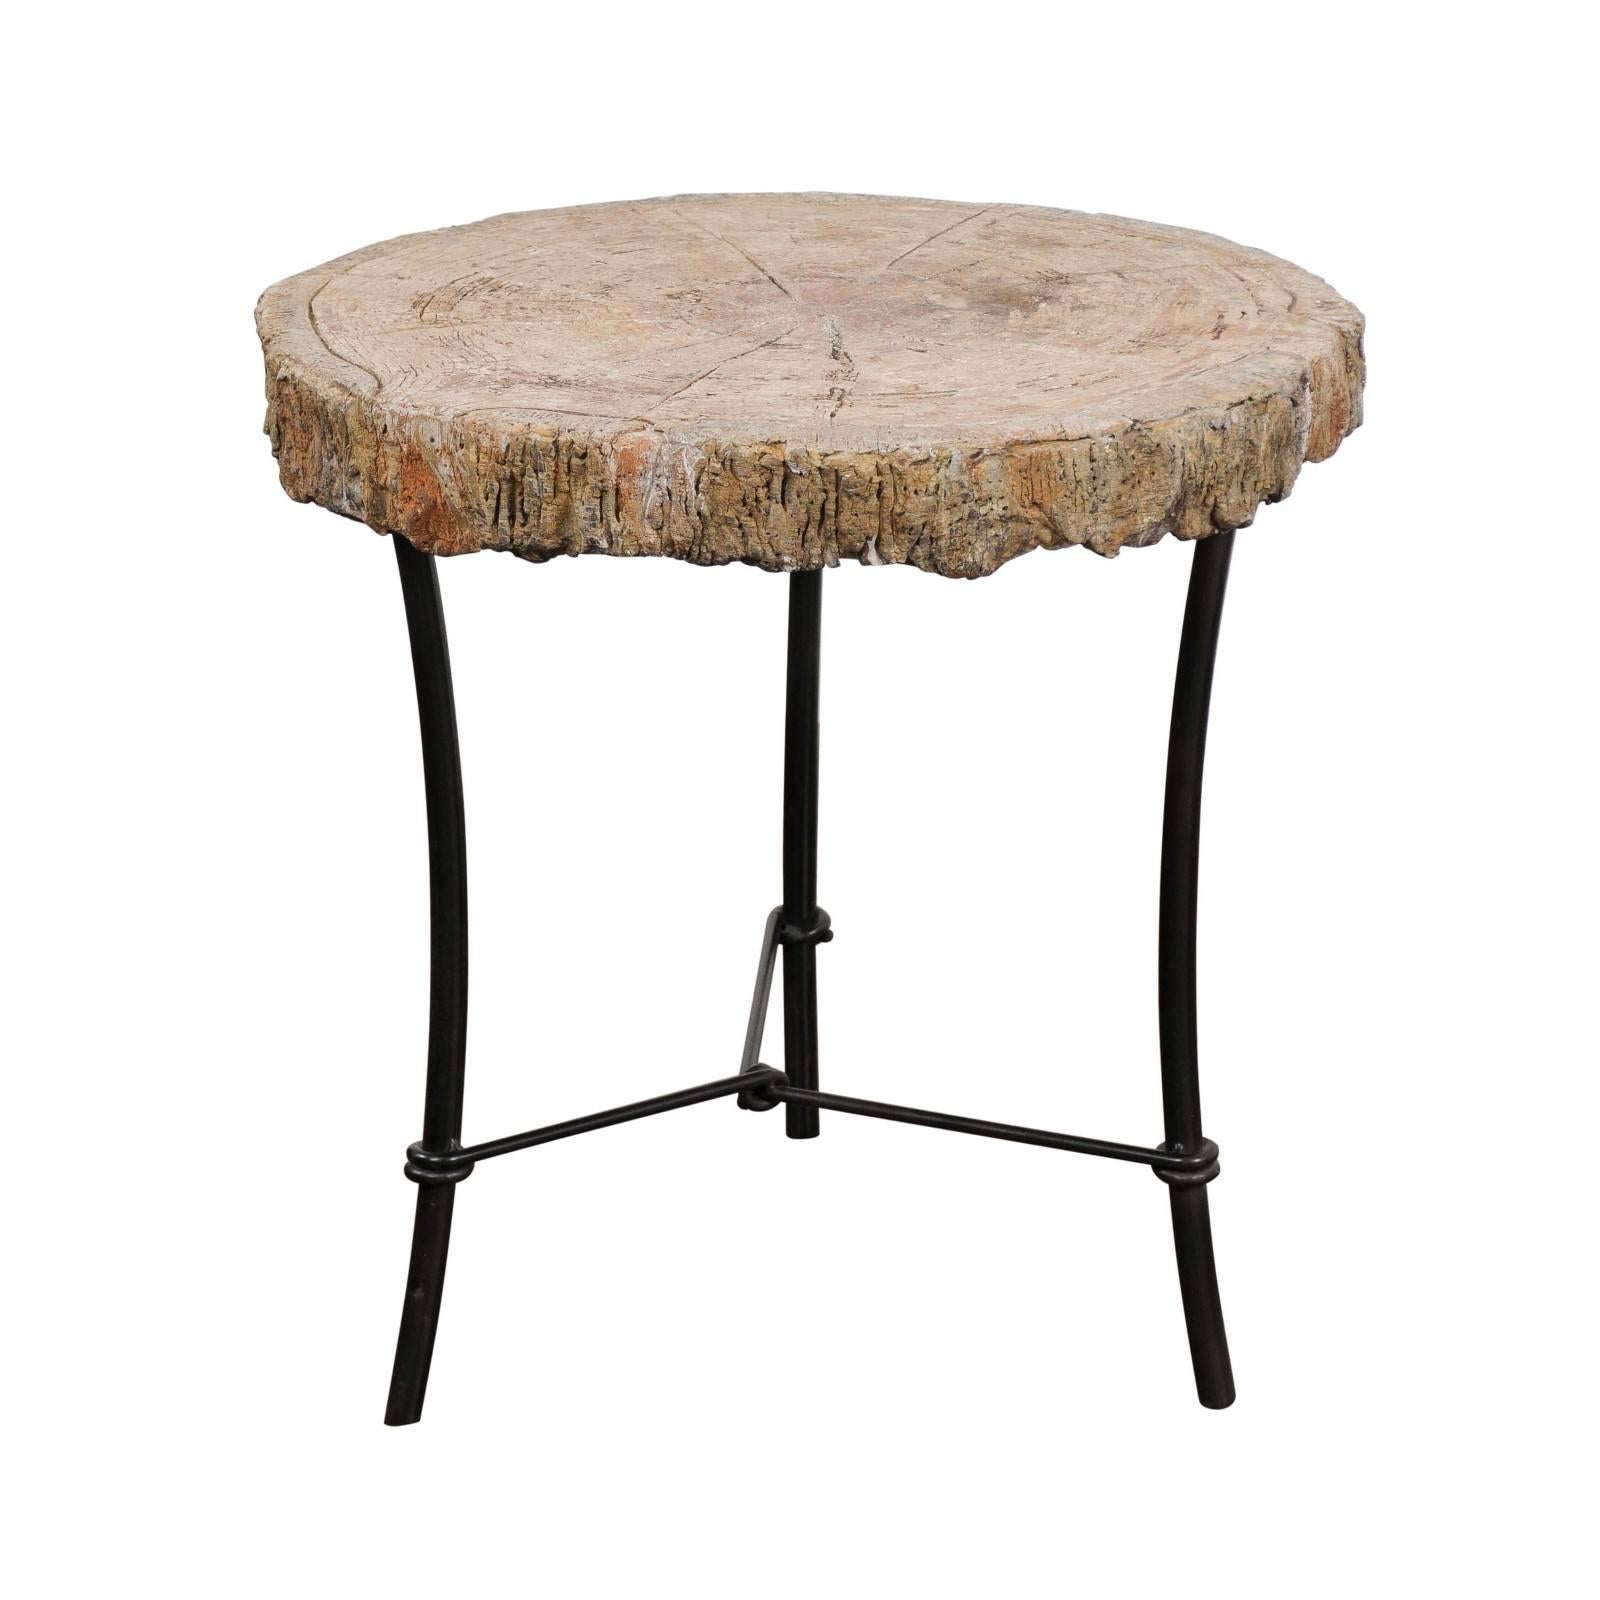 Ancienne table d'appoint ronde française des années 1920 en faux bois et pierre sur base en fer fabriquée sur mesure